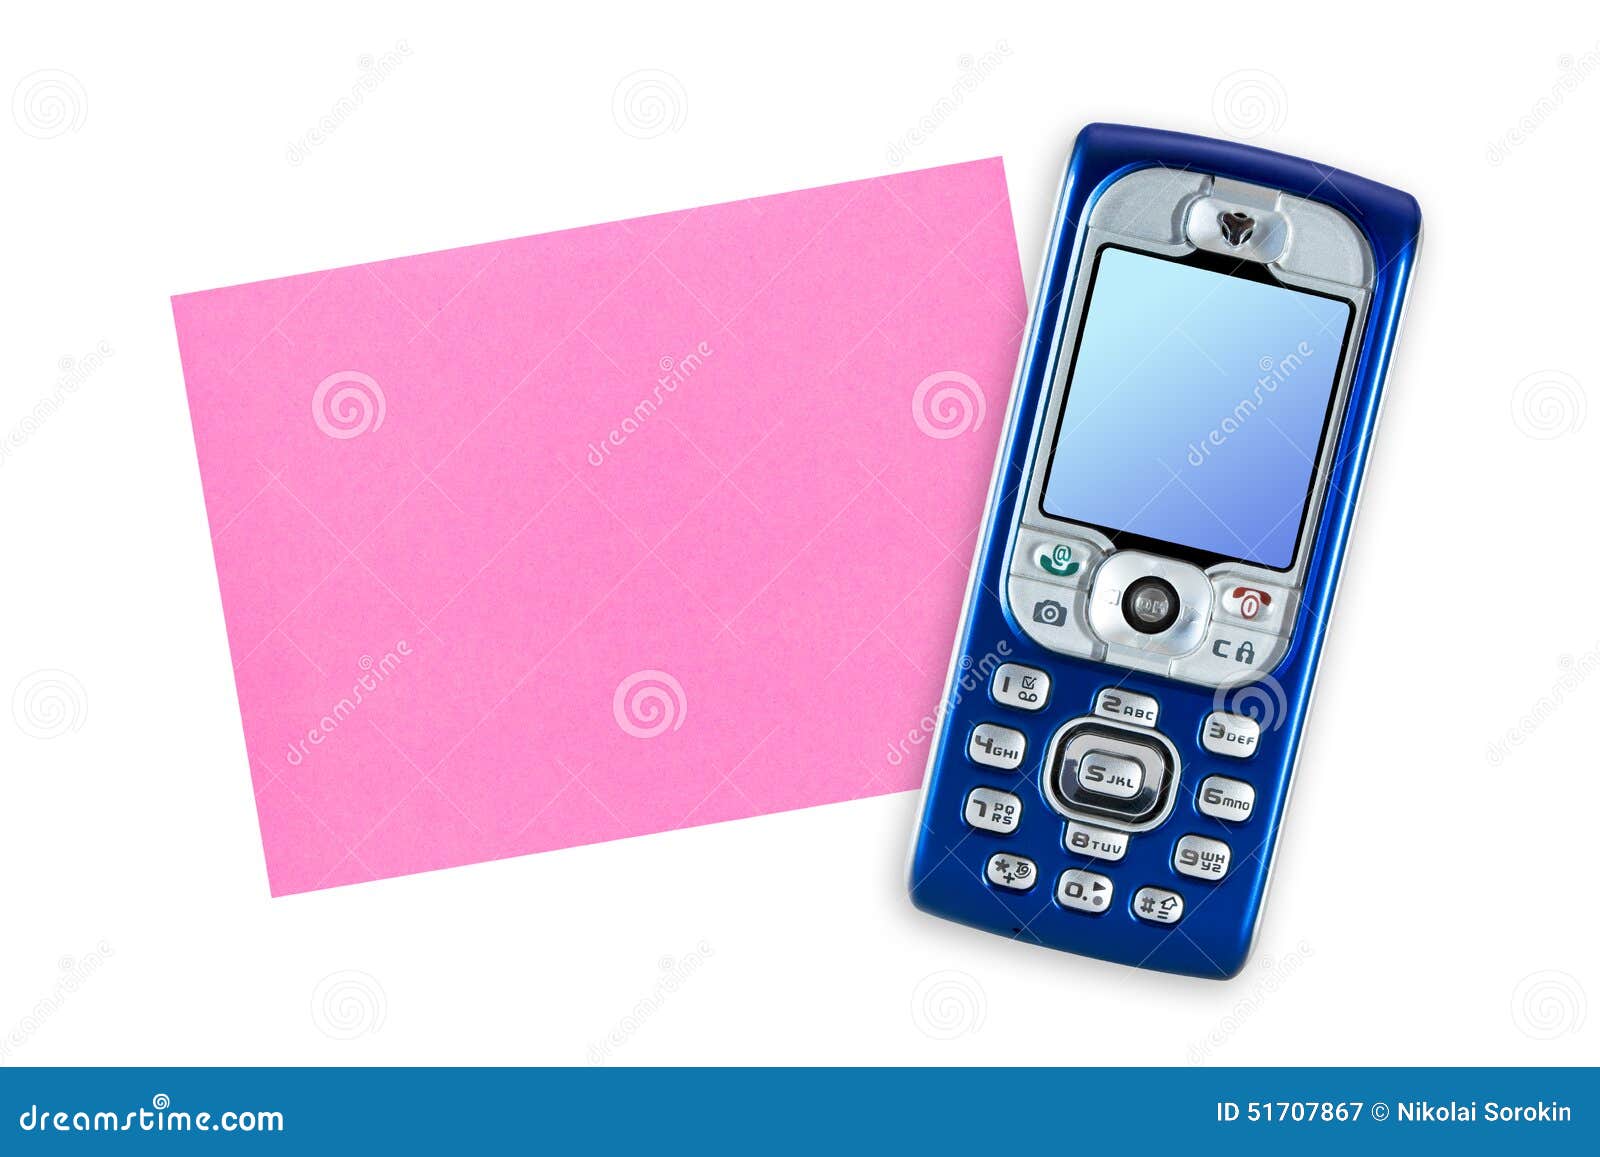 Телефон бумаги фото. Телефон из бумаги. Телефон из бумаги фоном белым с камерой. Телефон из бумаги фоном белым c камерой отдельно. Шаблон бумажного телефона.